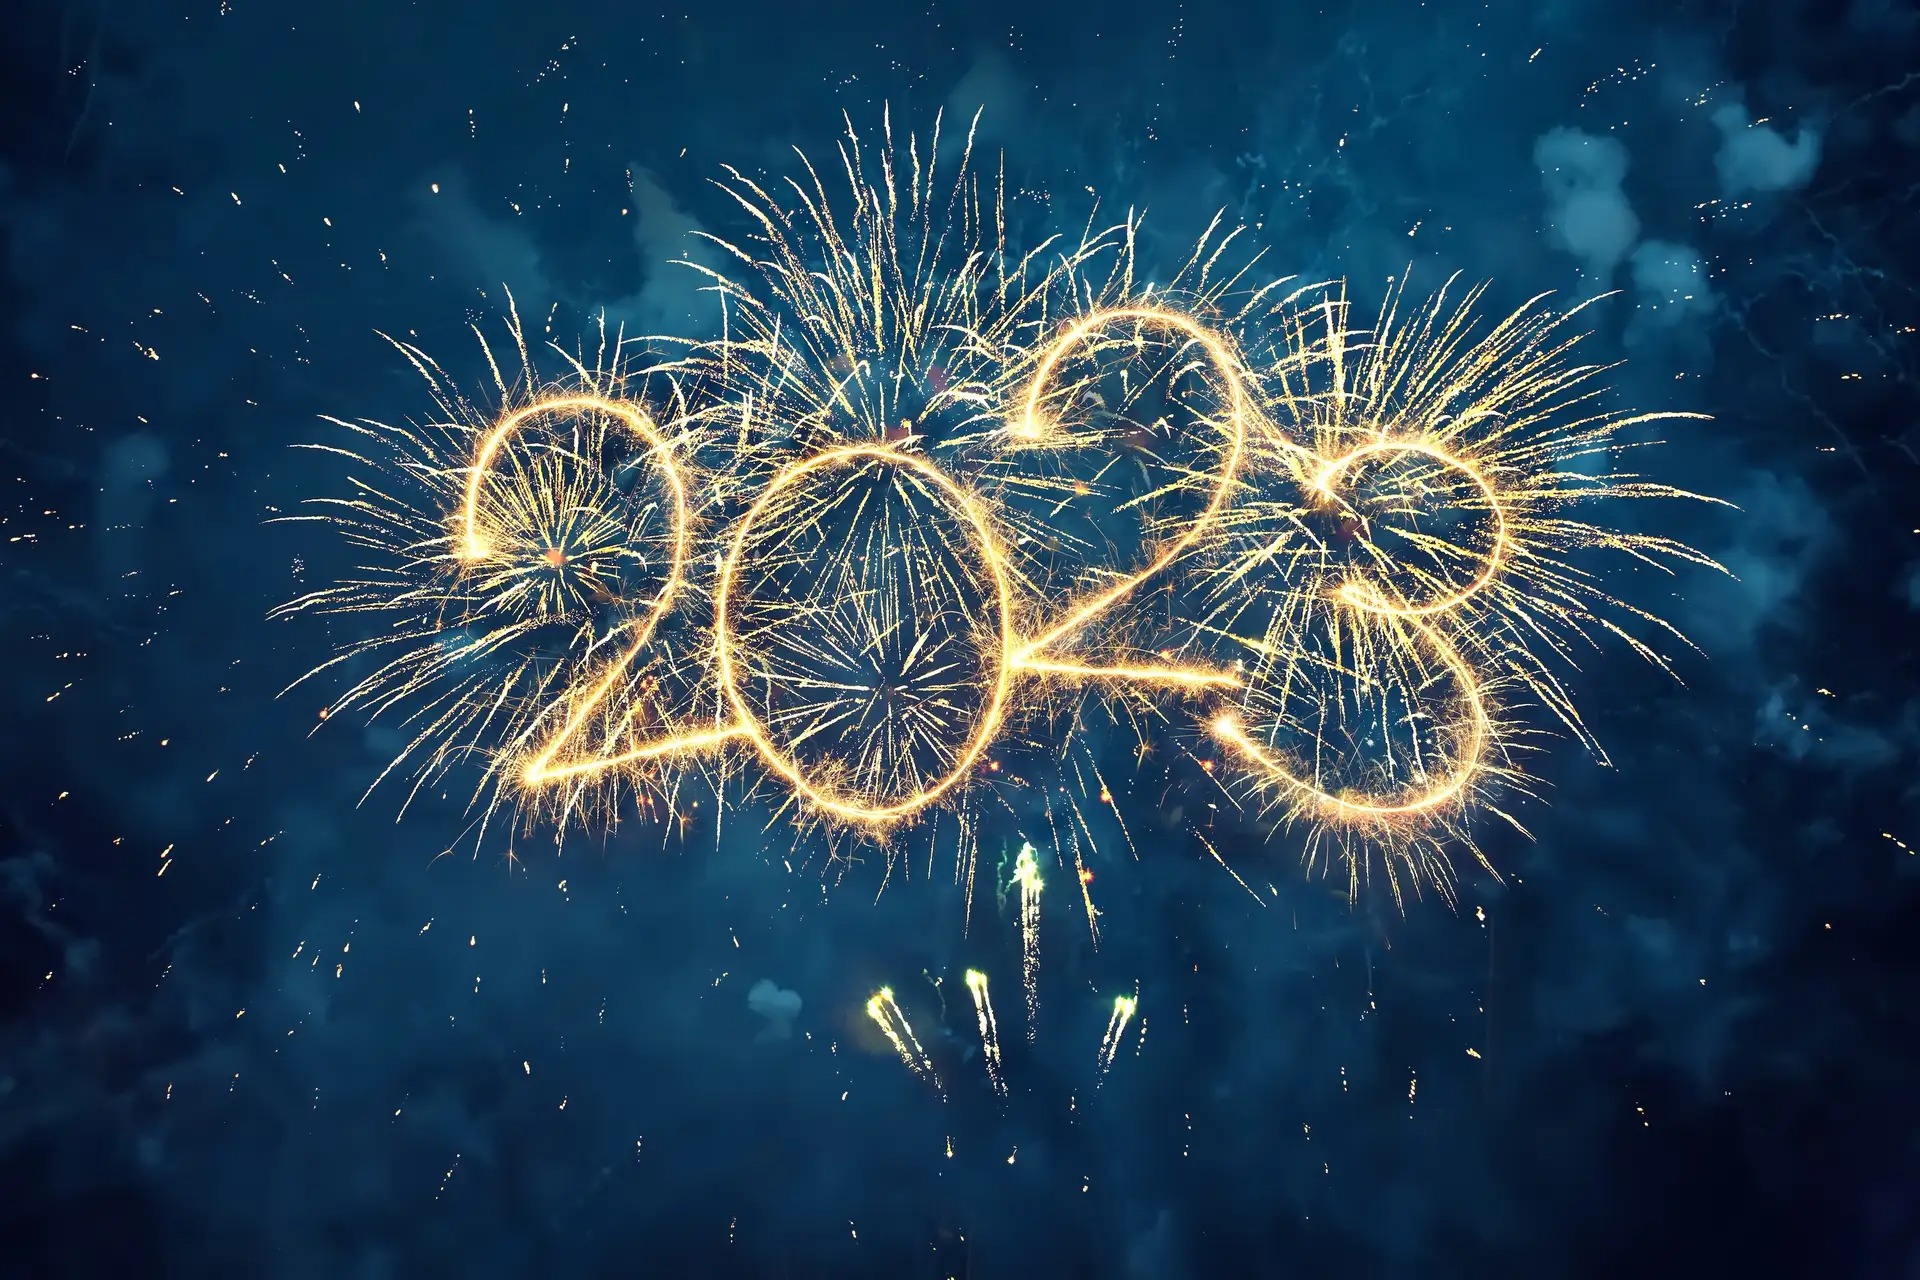 nouvelle annee 2023 - Futura wünscht Ihnen ein frohes neues Jahr 2023!